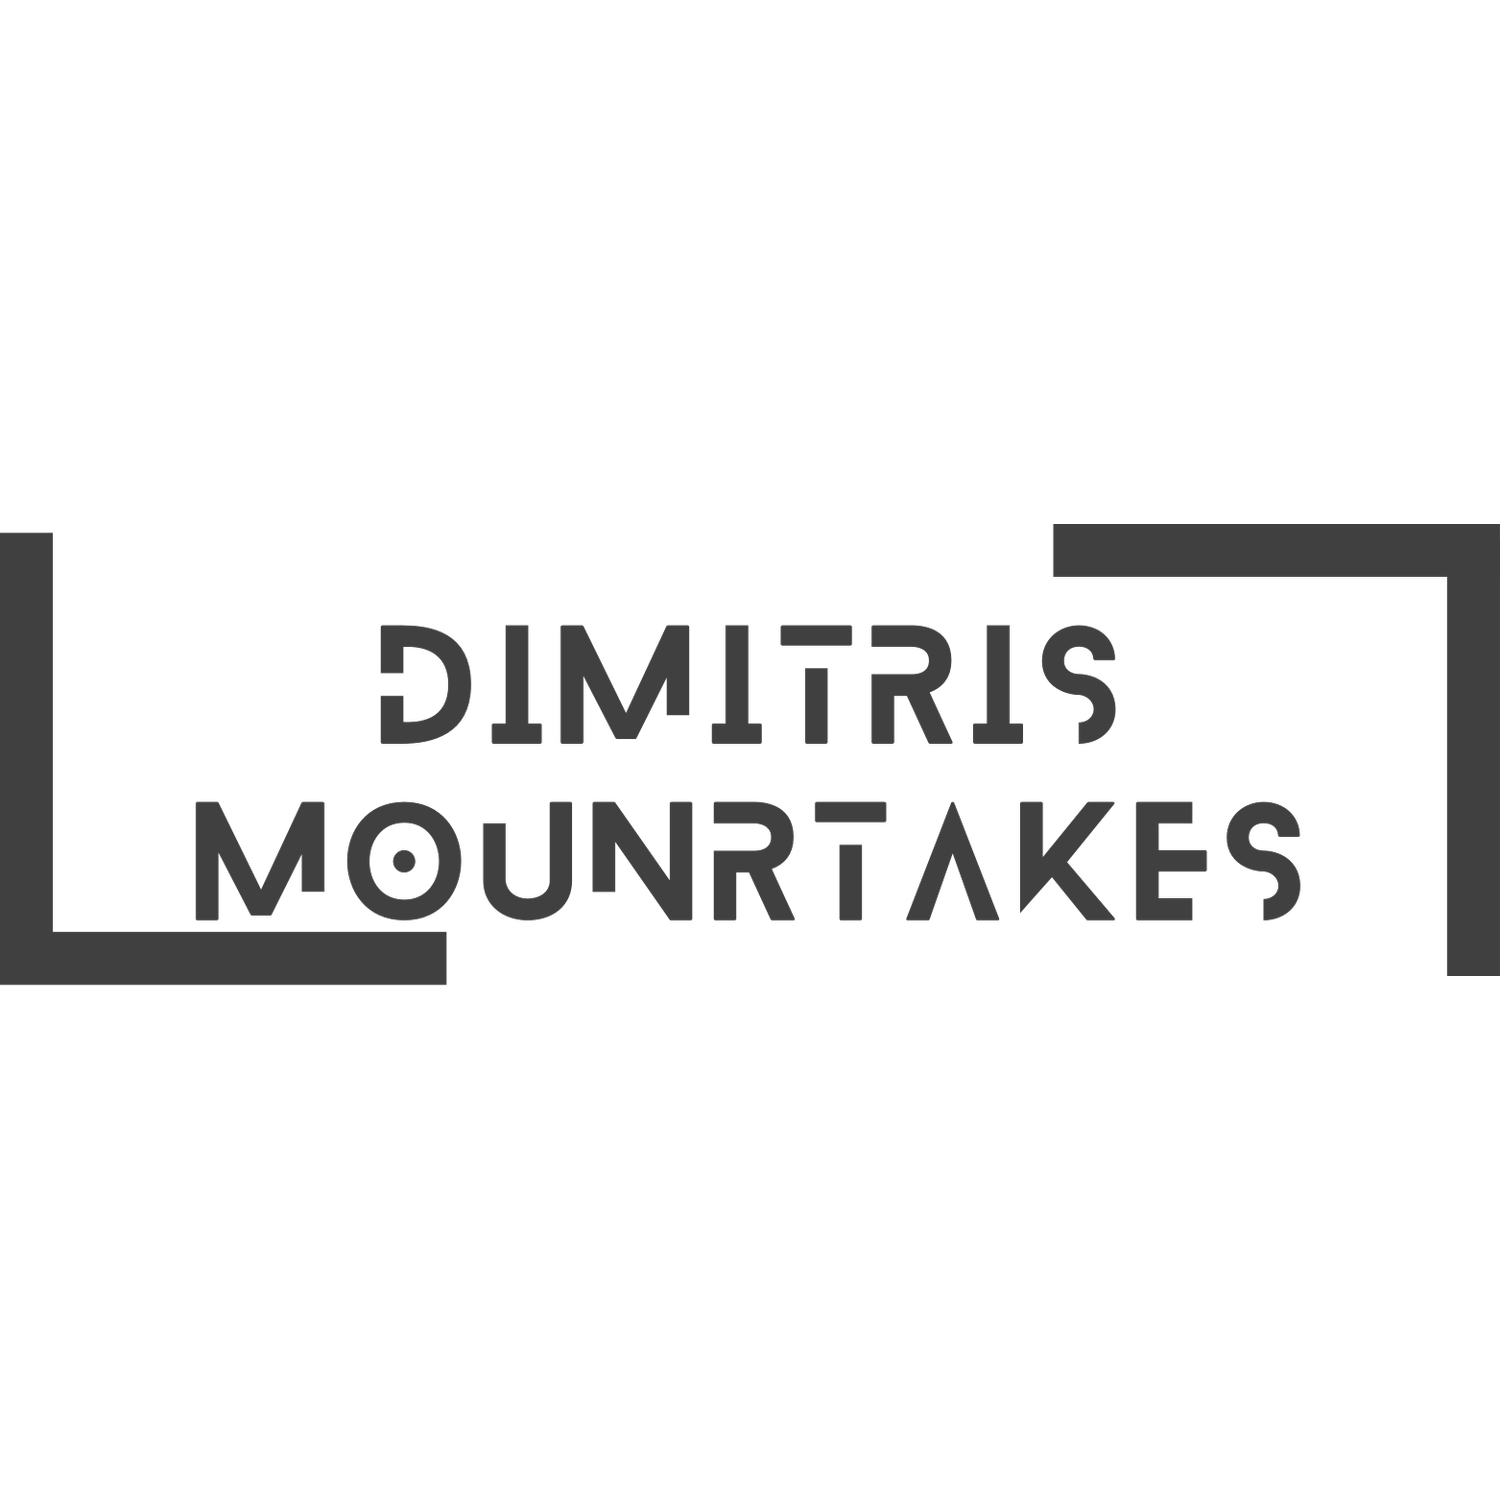 Dimitris Mountrakes